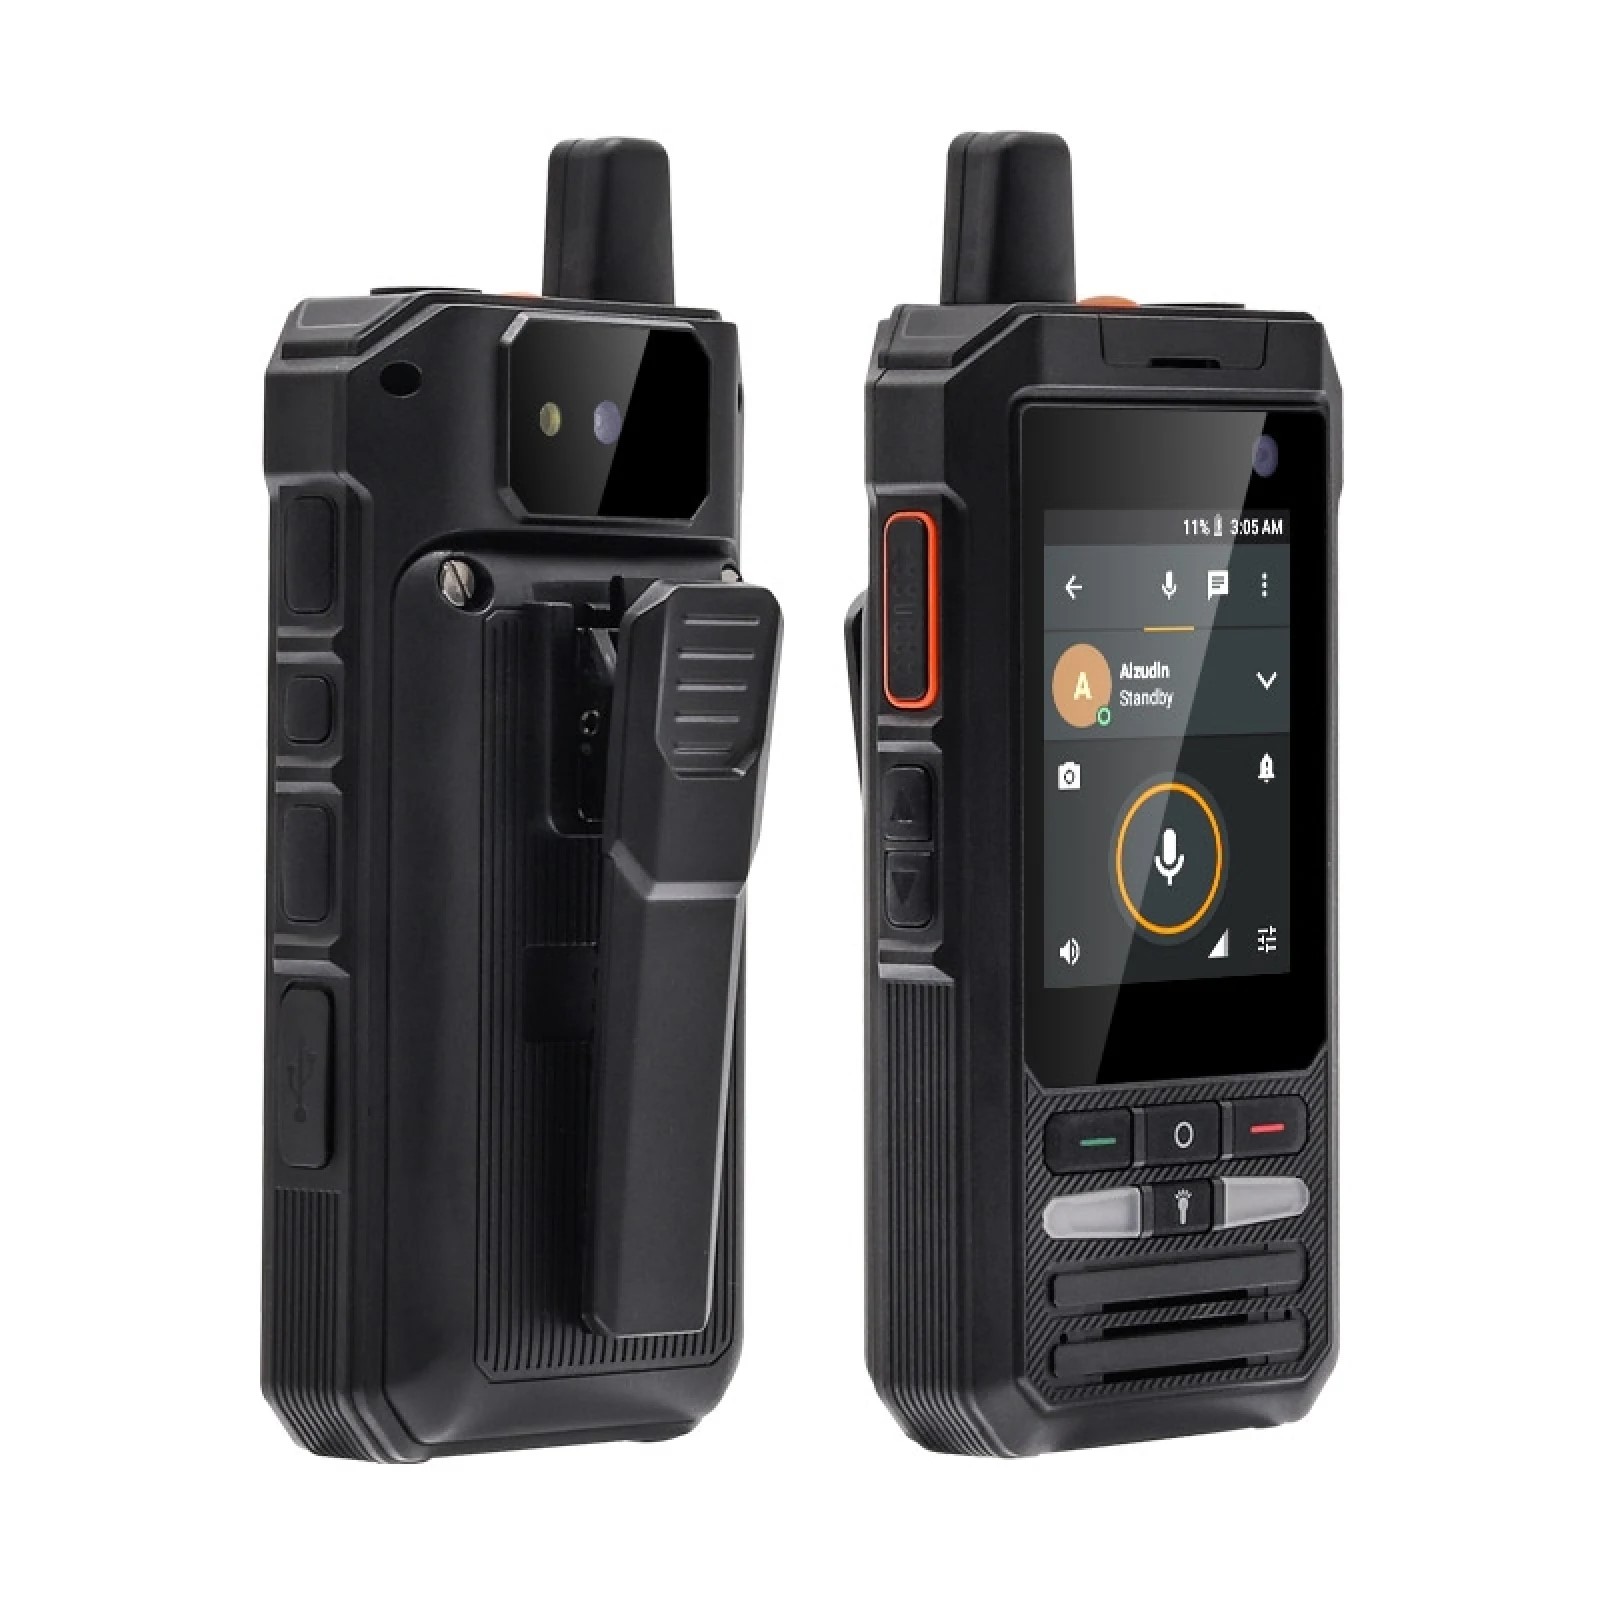 Мобильный телефон Uniwa F80S Black, купить в Москве, цены в интернет-магазинах на Мегамаркет